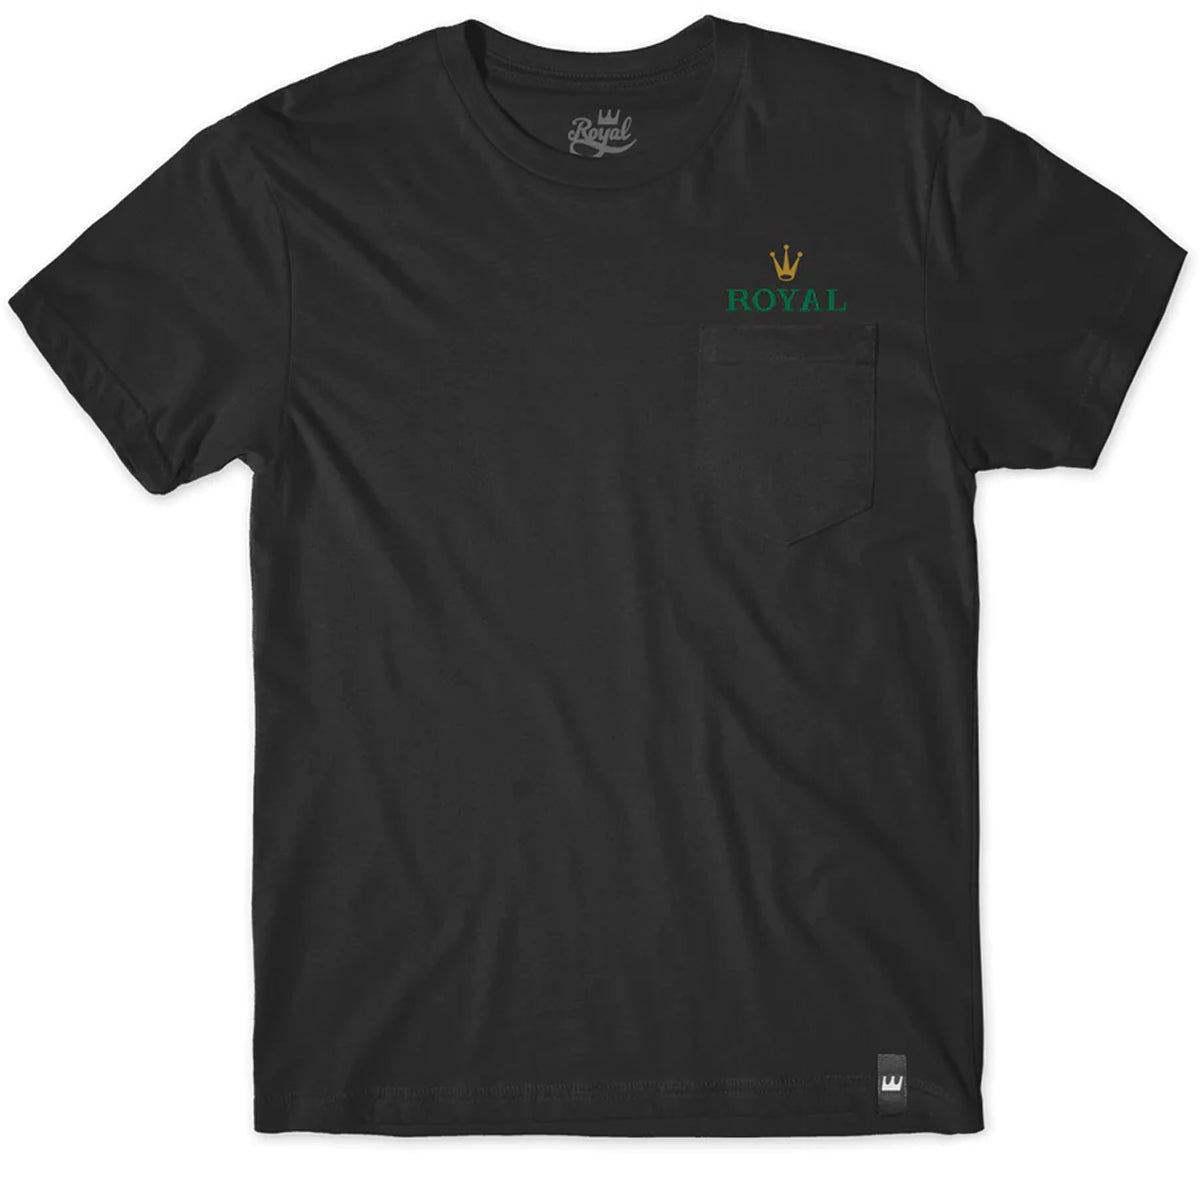 Royal Rollie Pocket T-Shirt - Black image 1